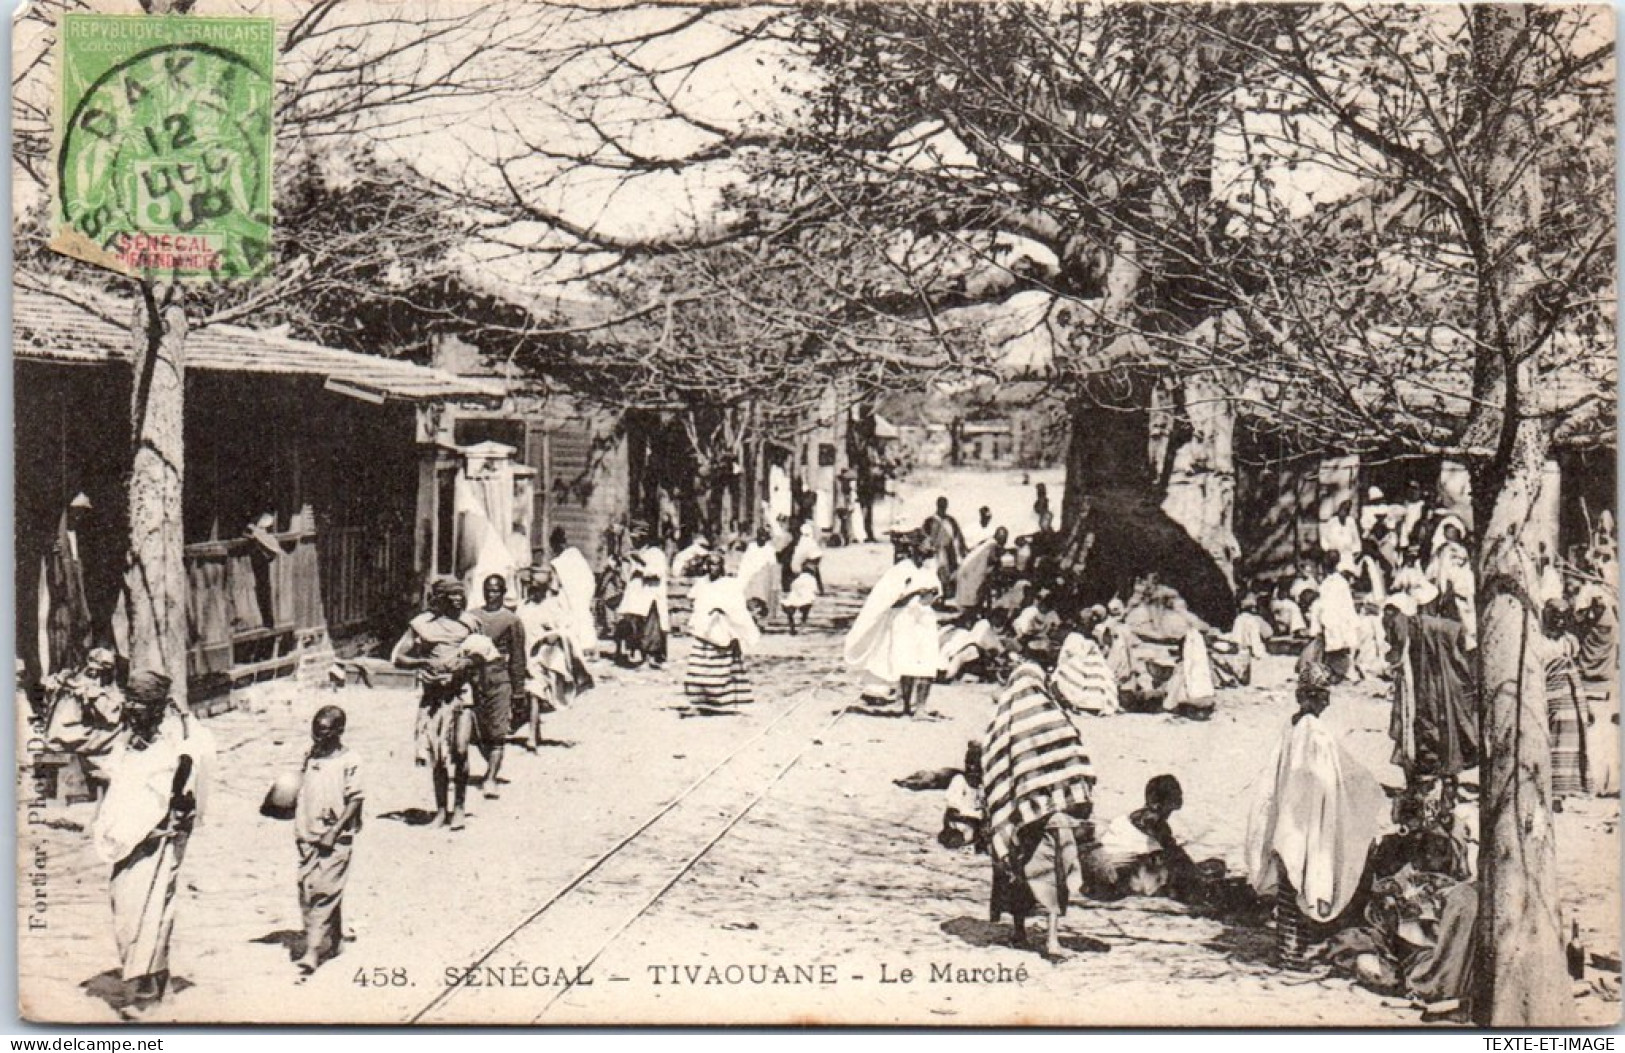 SENEGAL - TIVAOUANE - Le Marche  - Senegal